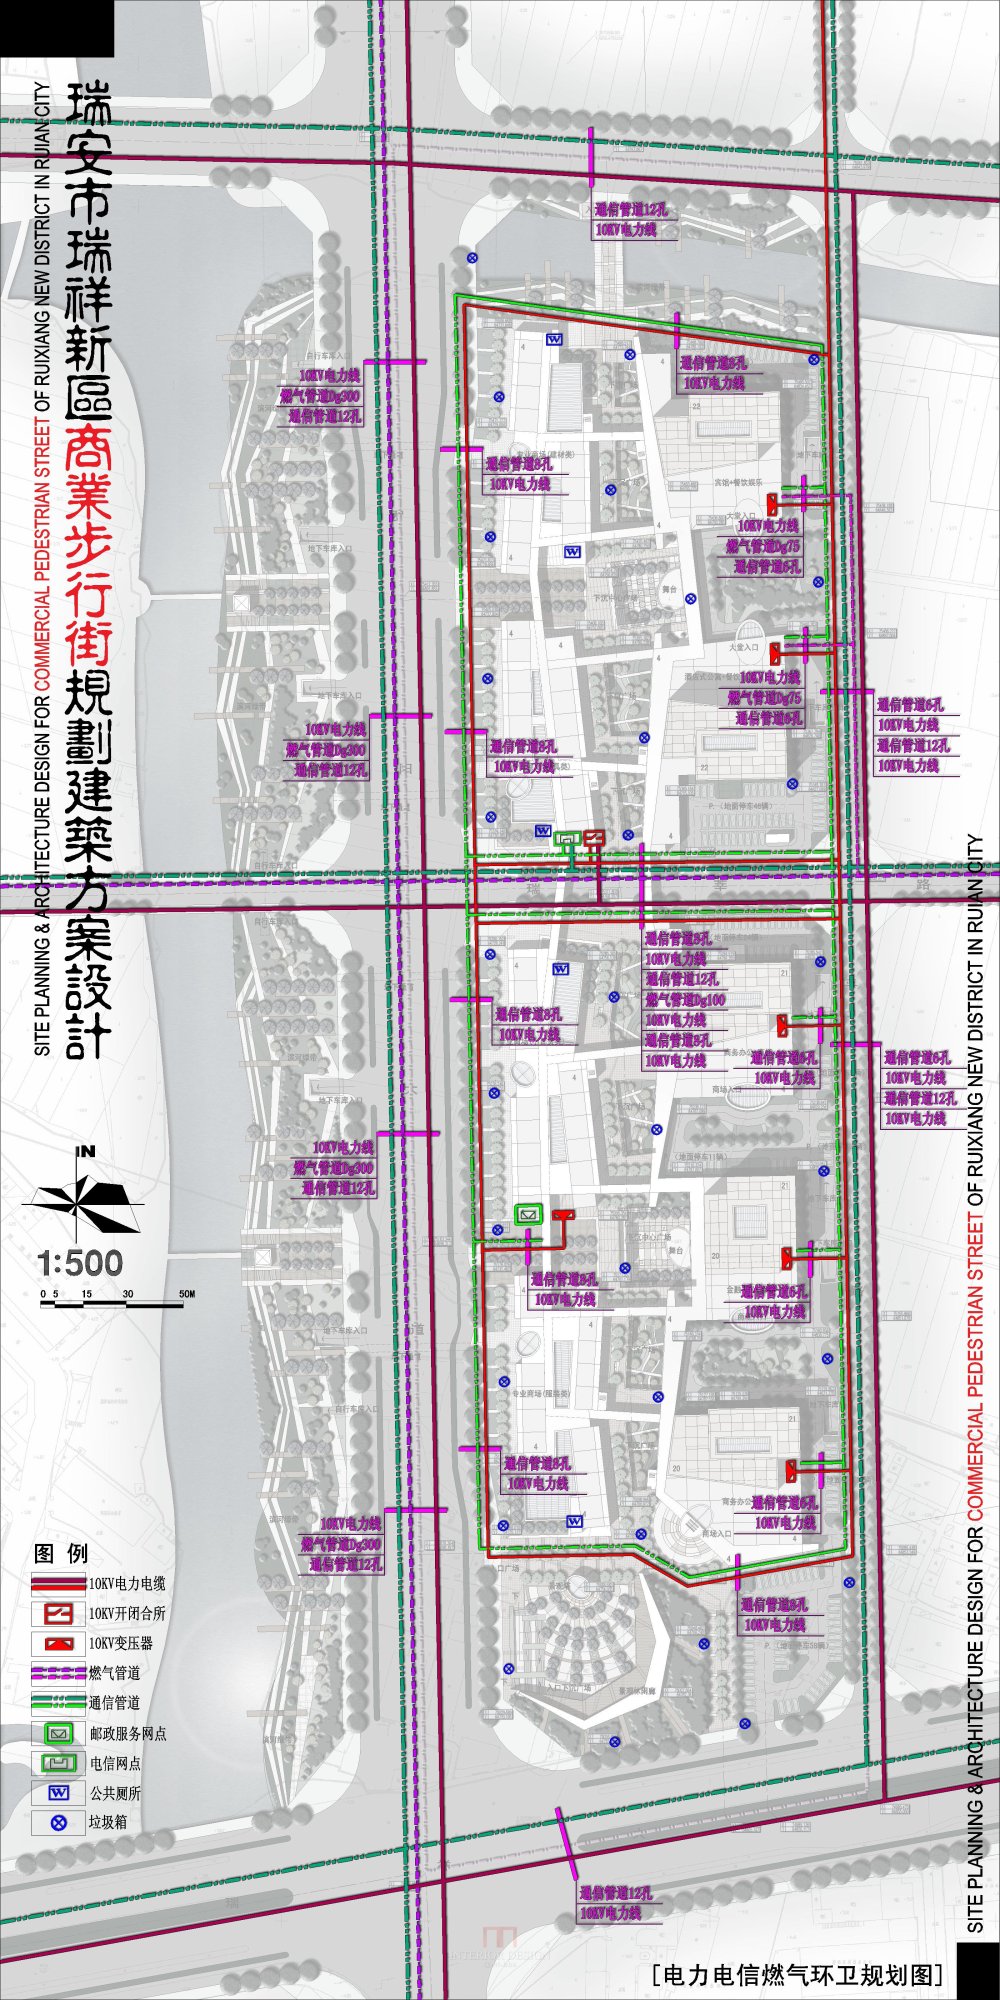 浙江瑞安新区商业步行街规划建筑设计方案_3-04瑞安商业街-电力电信.jpg